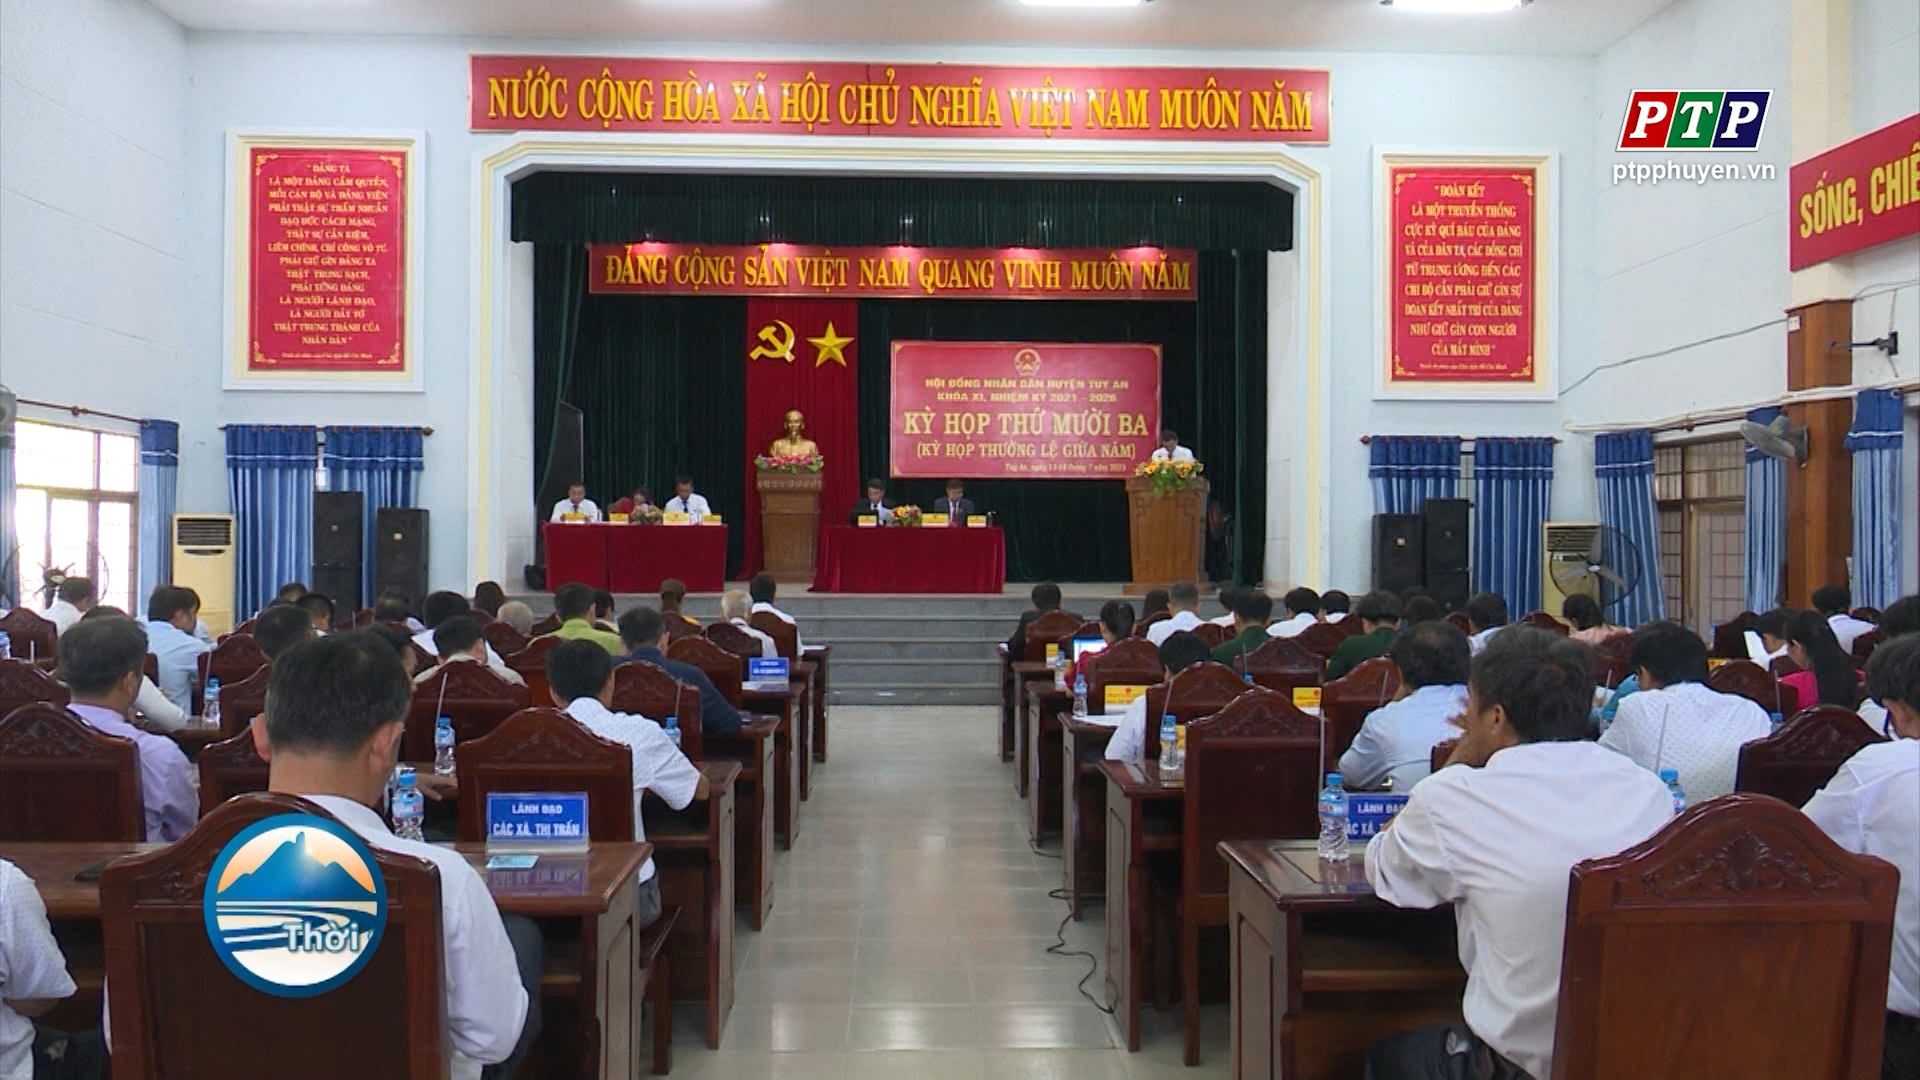 HĐND huyện Tuy An (Khóa XVIII) khai mạc Kỳ họp thường lệ giữa năm